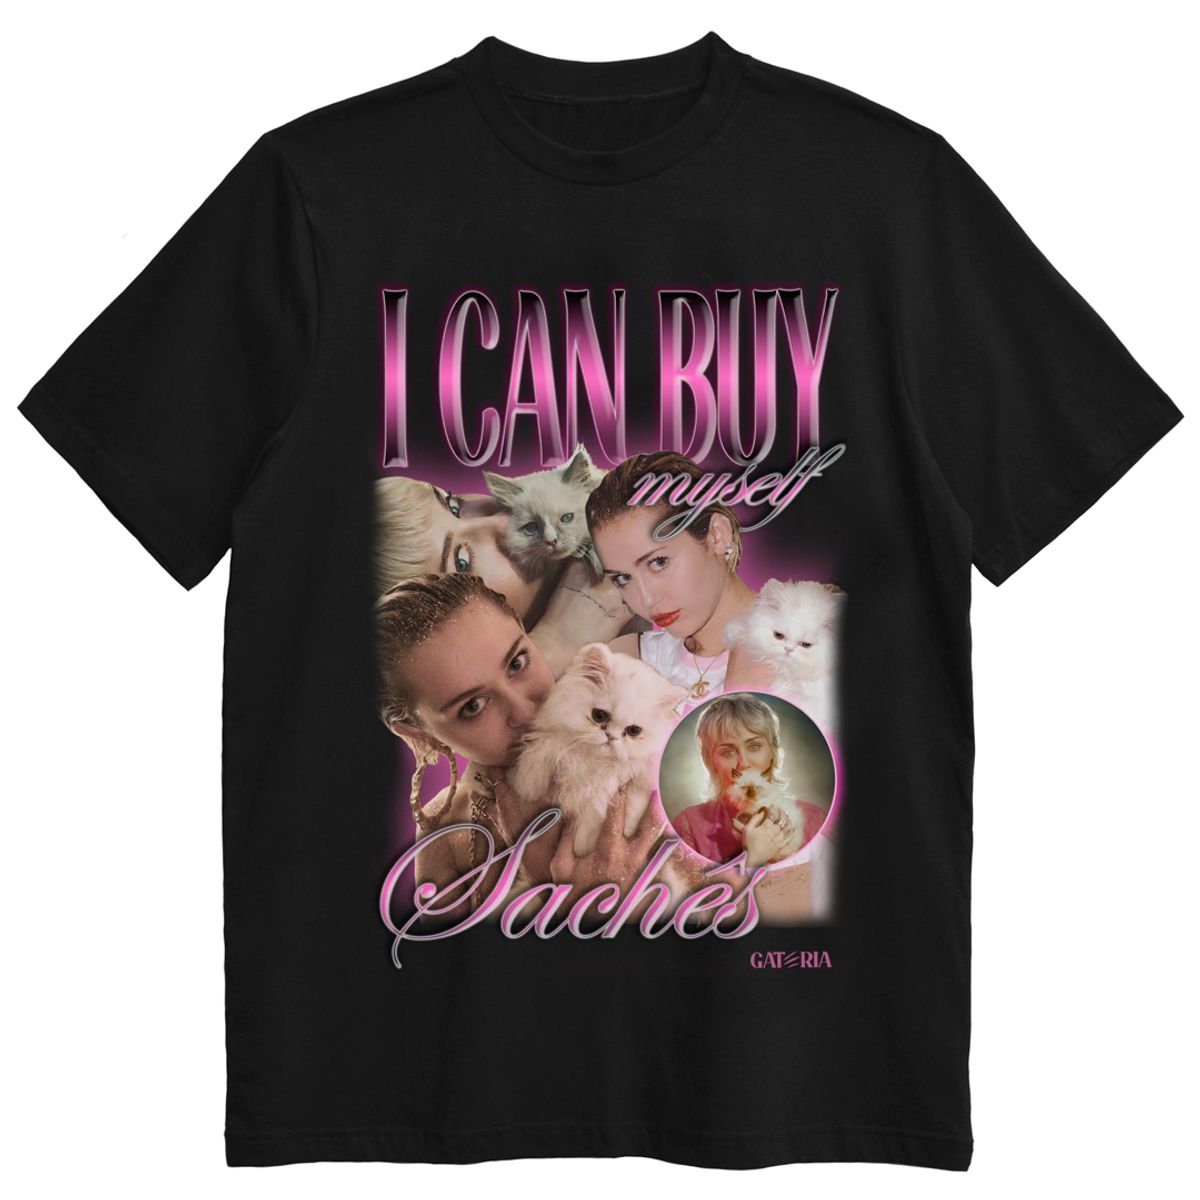 Nome do produto: Camiseta Miley Cyrus - I Can Buy Myself Sachês - Preto